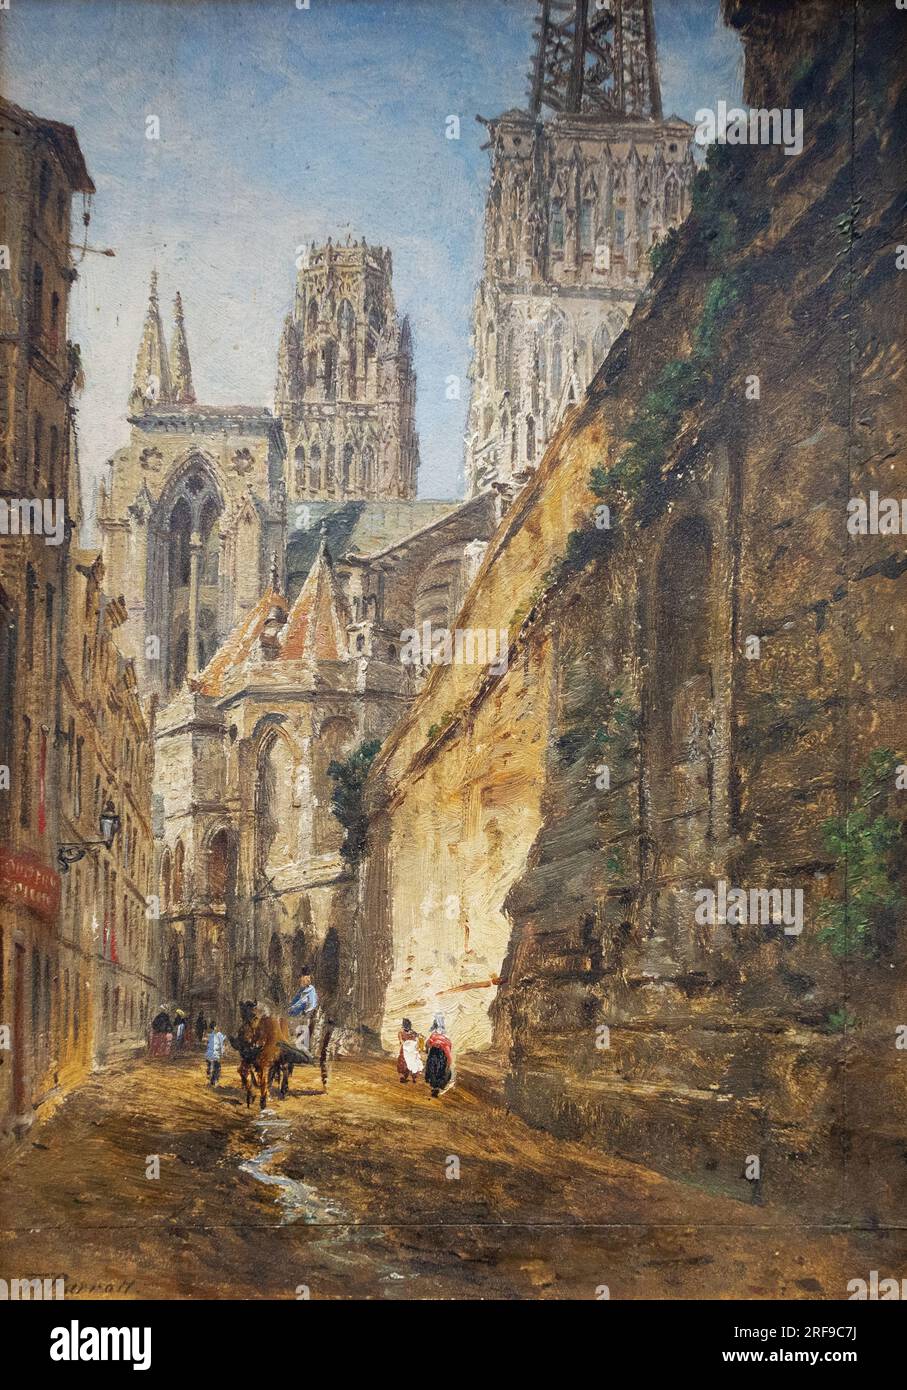 Peinture de William Parrott ; Cathédrale de Rouen c. 1860 ; artiste anglais du 19e siècle. Banque D'Images